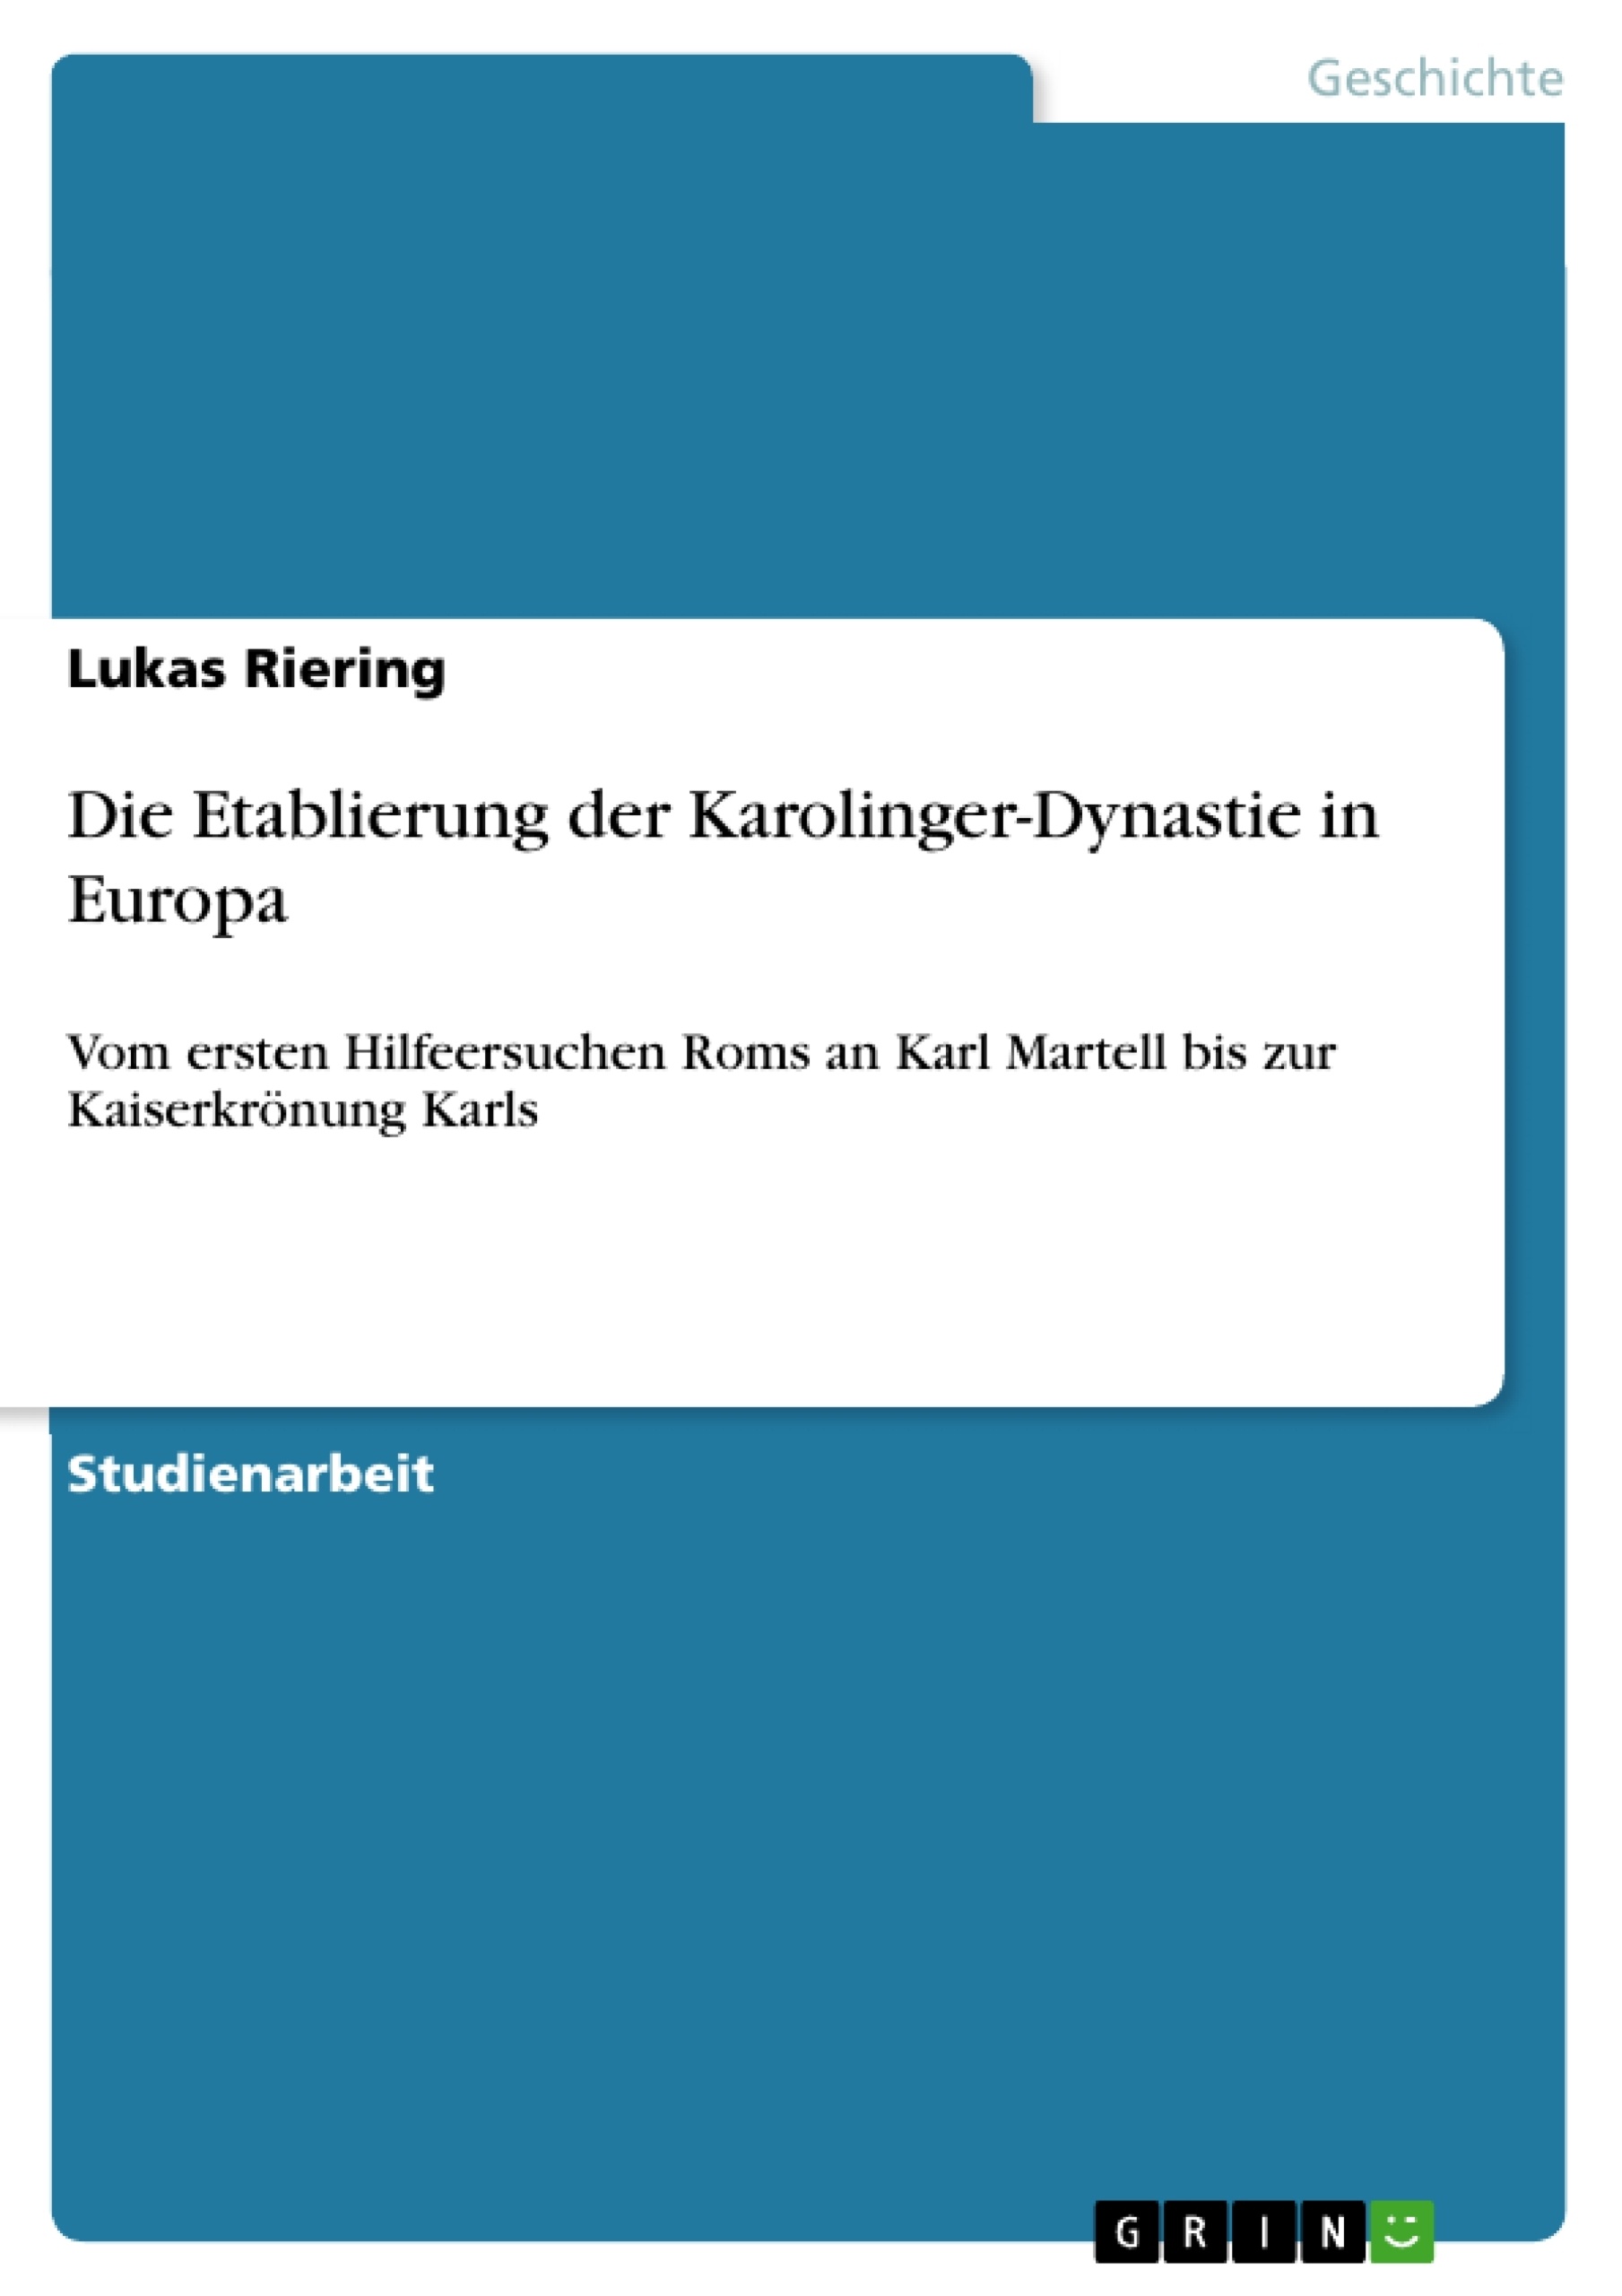 Título: Die Etablierung der Karolinger-Dynastie in Europa